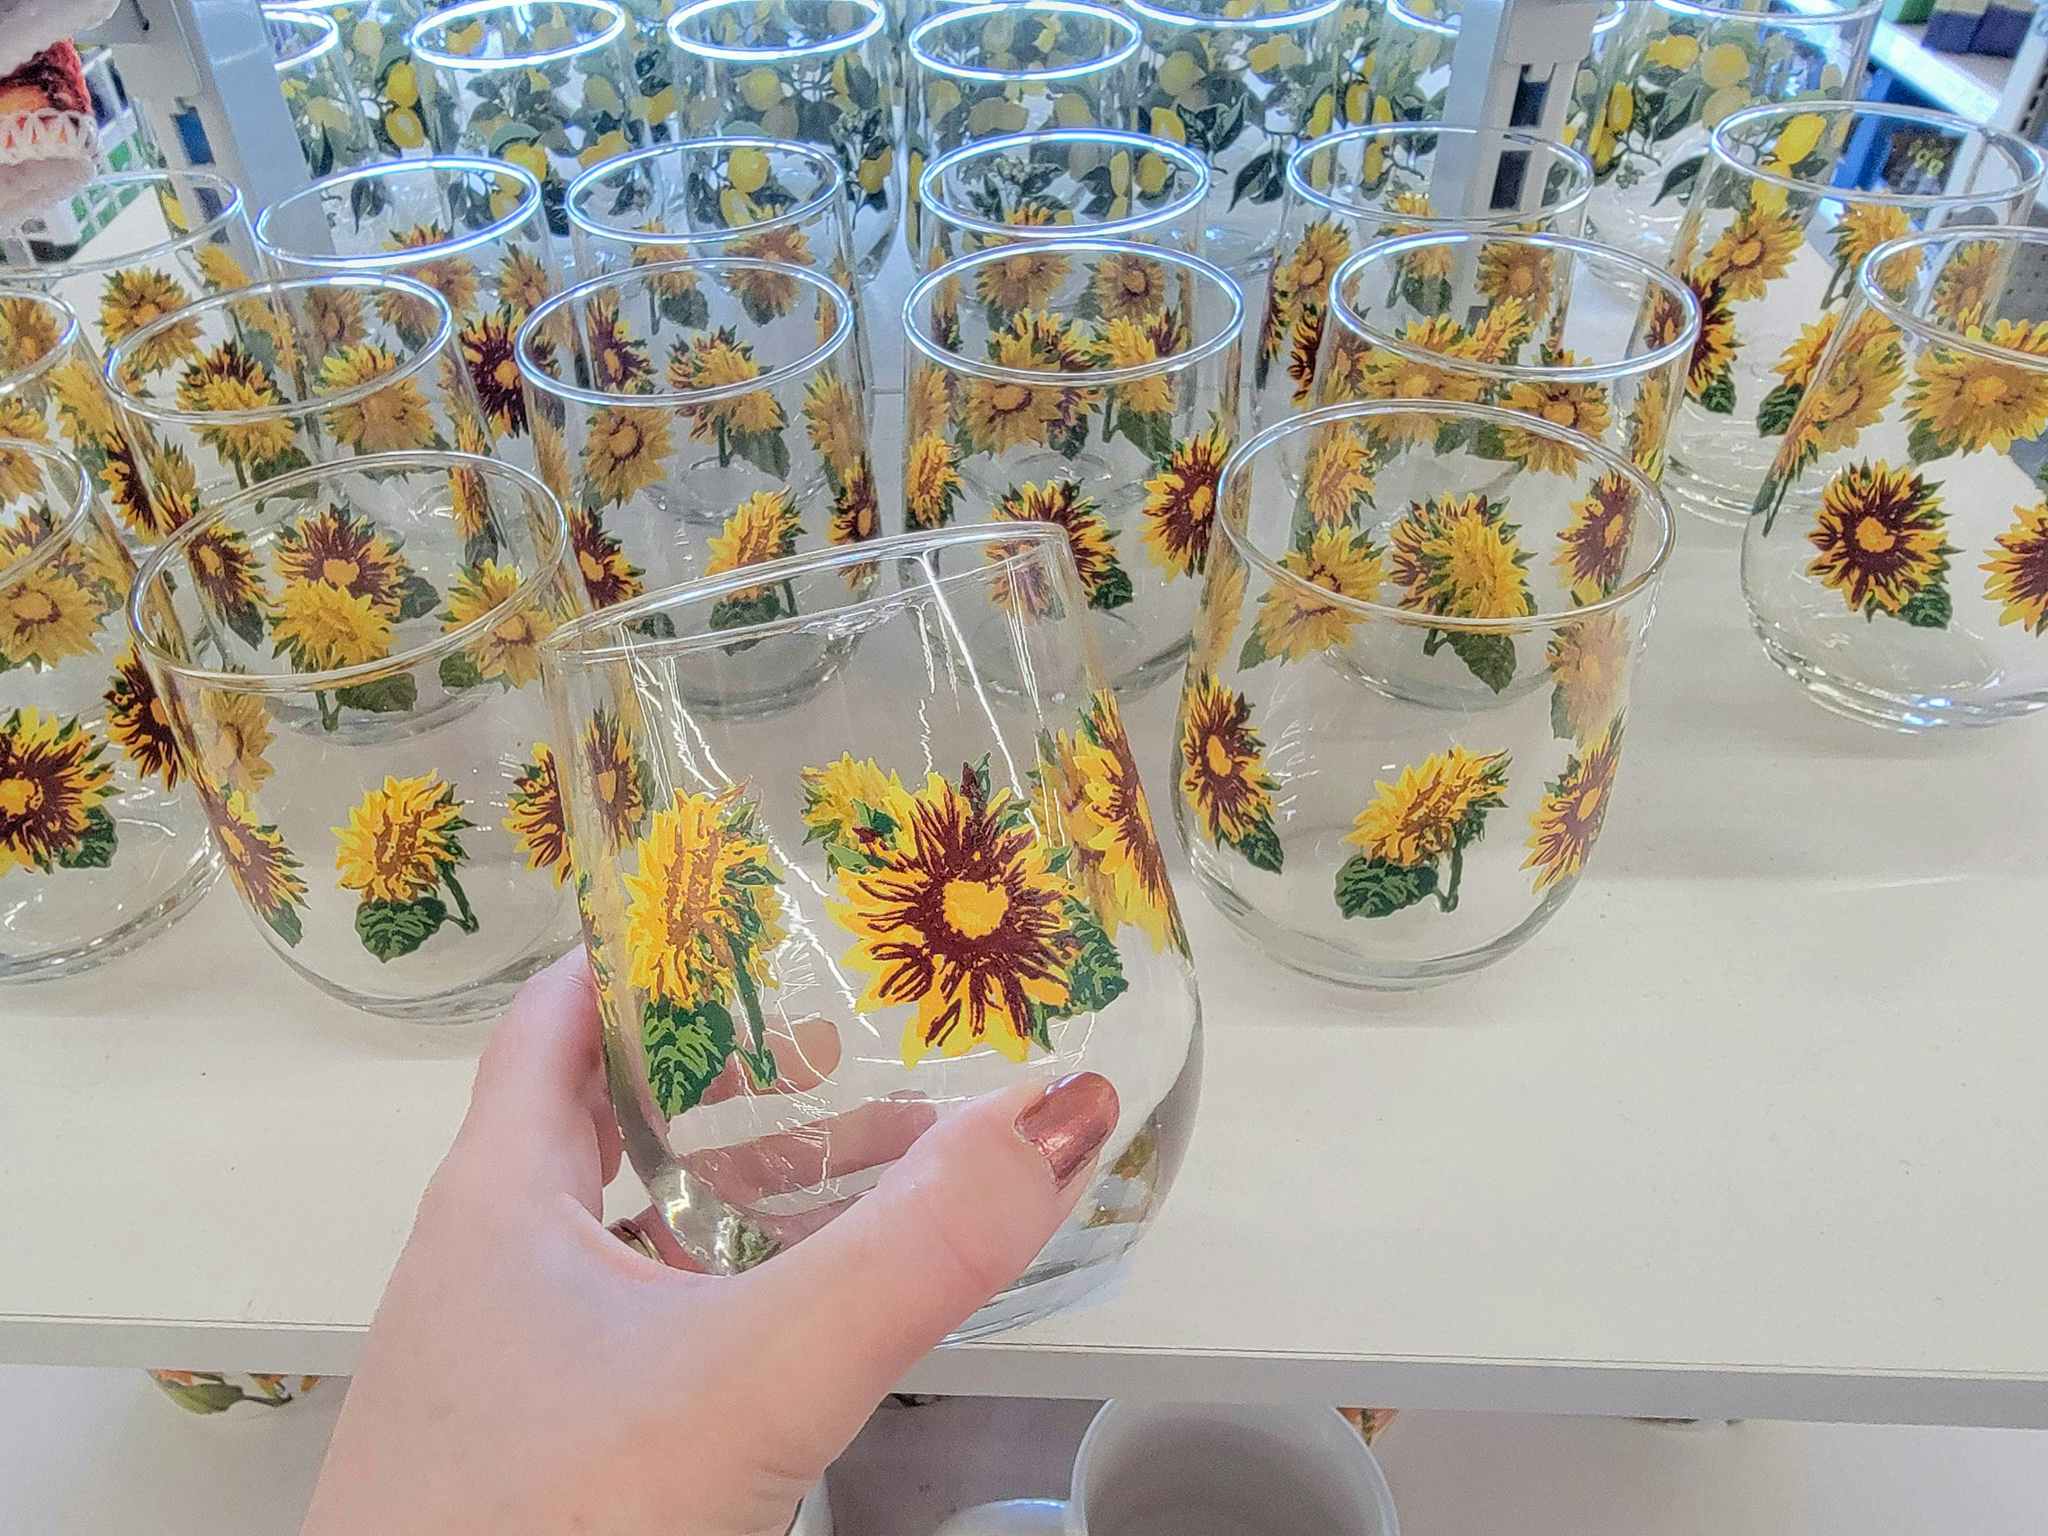 hand holding a sunflower glass